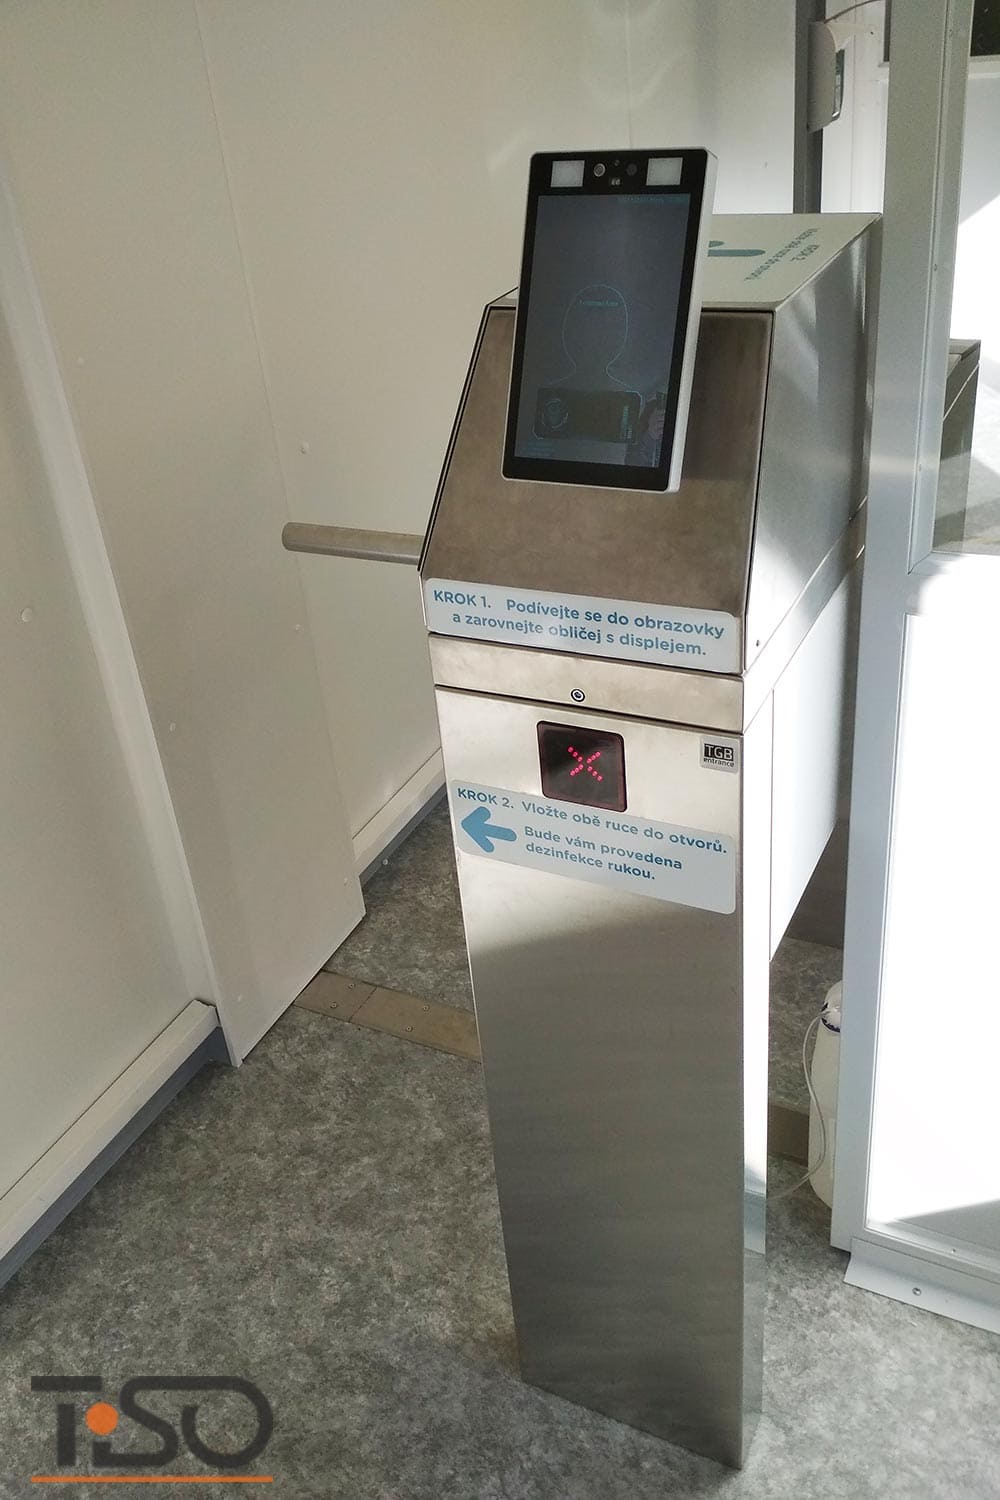 Twix-M et système de désinfection automatique des mains, hôpital Horovice, République tchèque